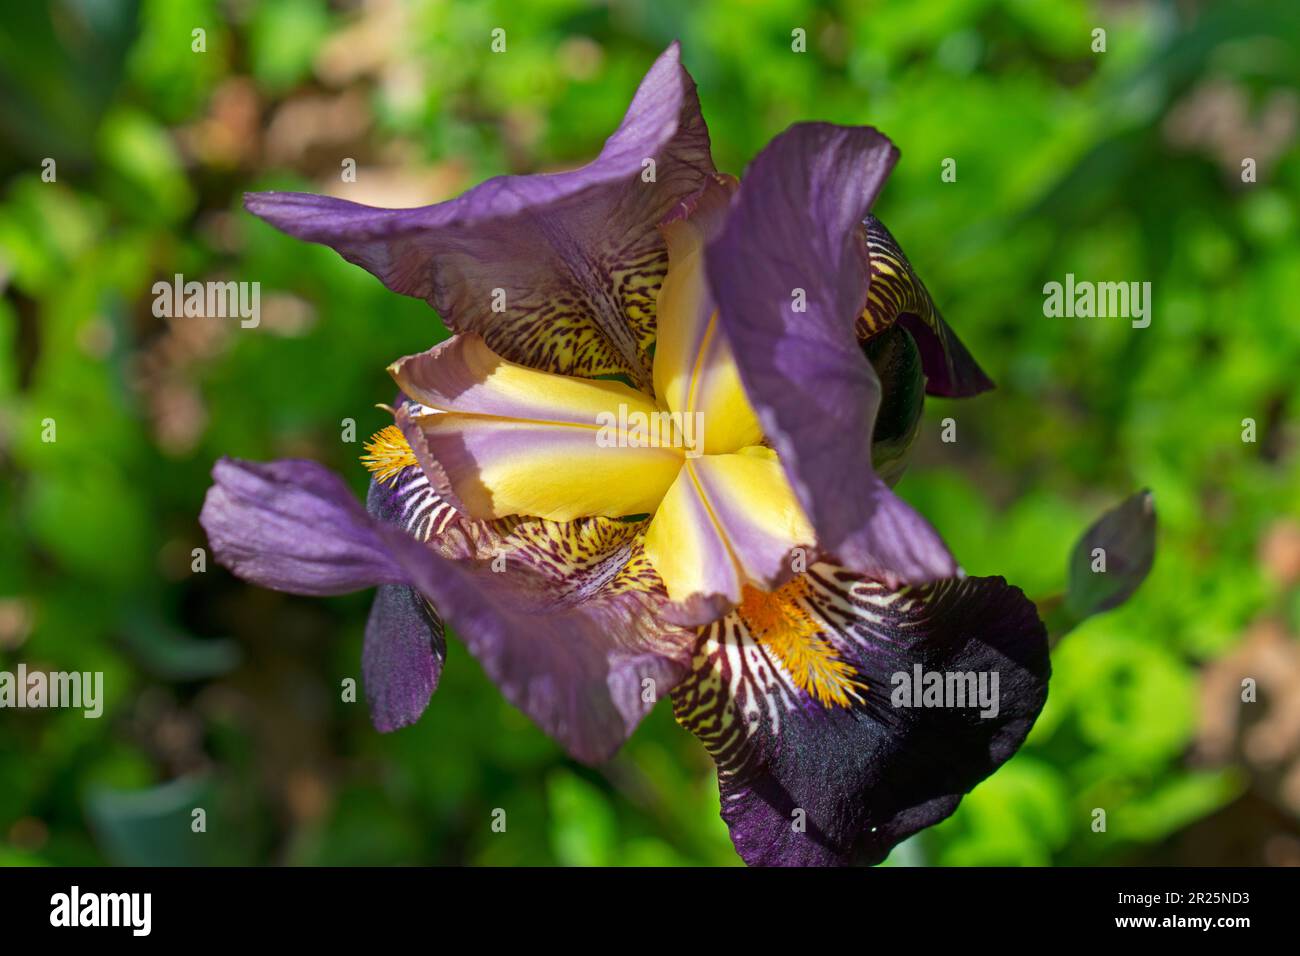 Grande fleur de l'iris allemand barbu, violette, sur un fond intentionnellement flou de feuilles vertes -20 Banque D'Images